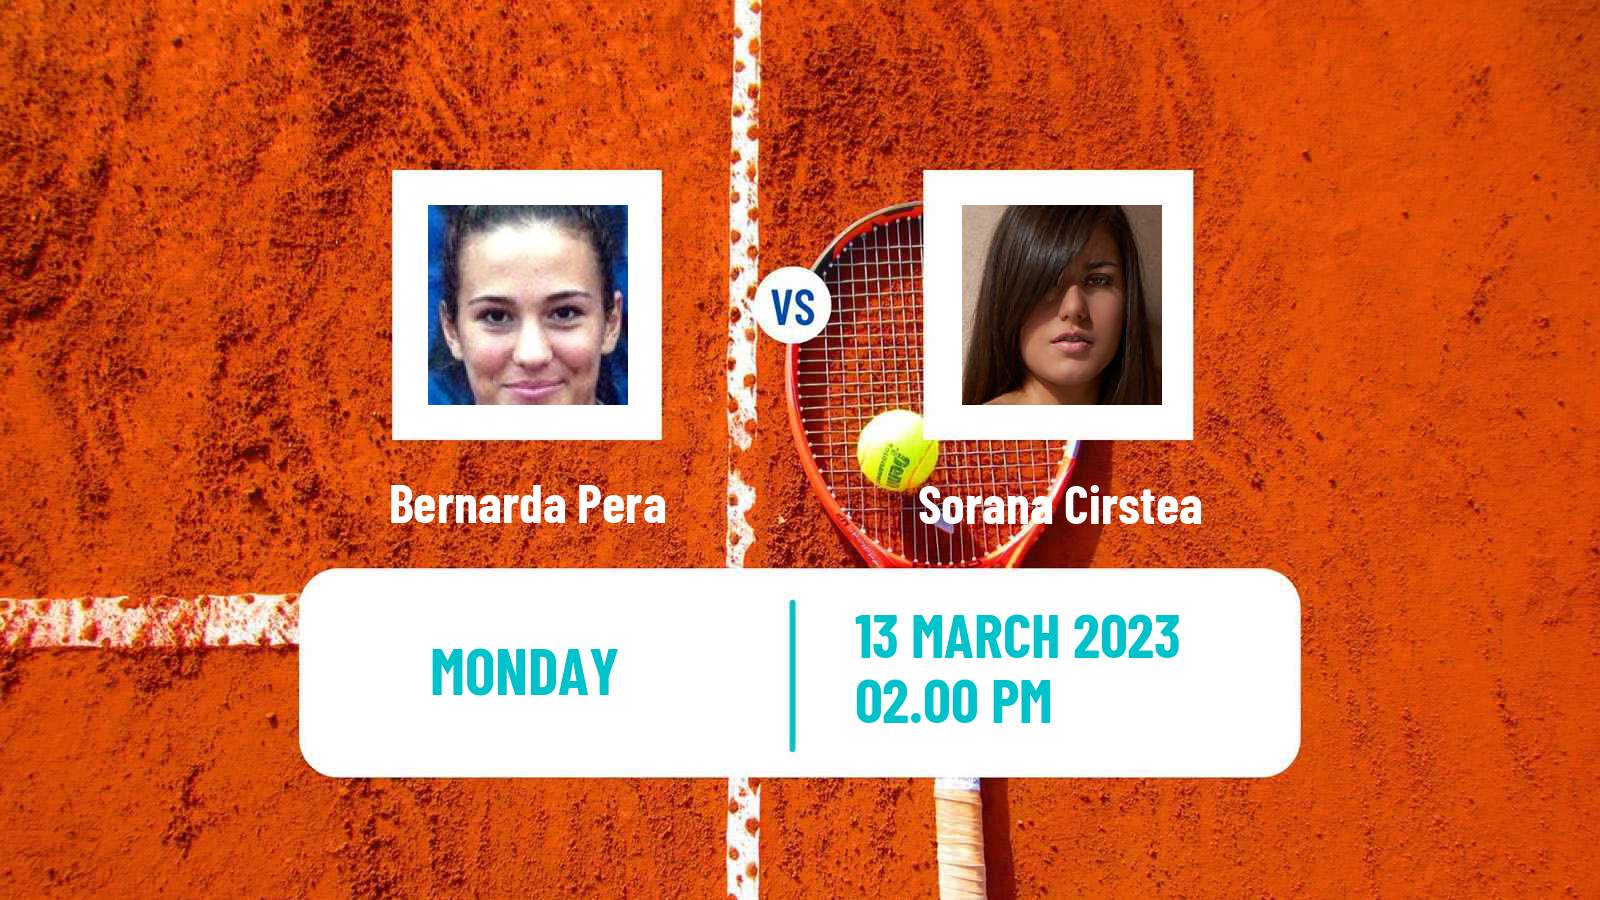 Tennis WTA Indian Wells Bernarda Pera - Sorana Cirstea